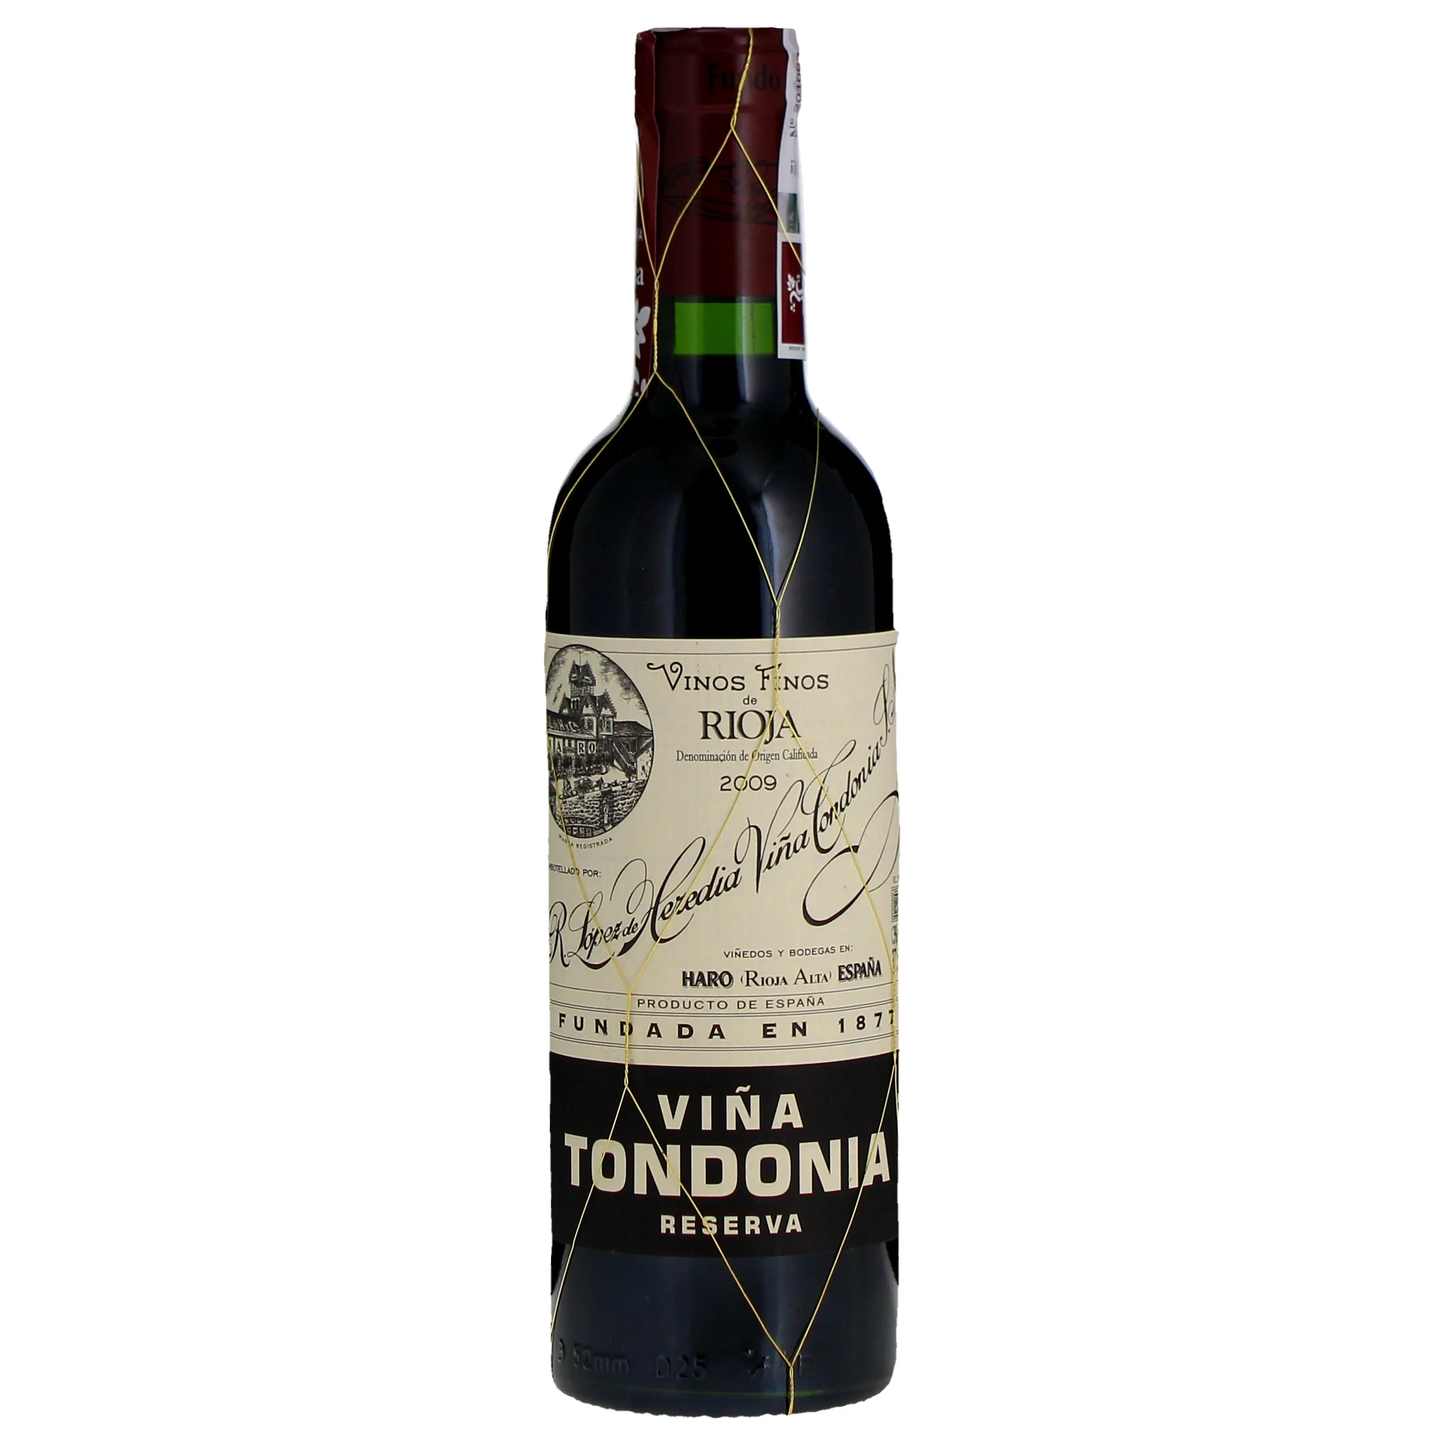 R. Lopez de Heredia Rioja Vina Tondonia Reserva 2009 (Half Bottle)